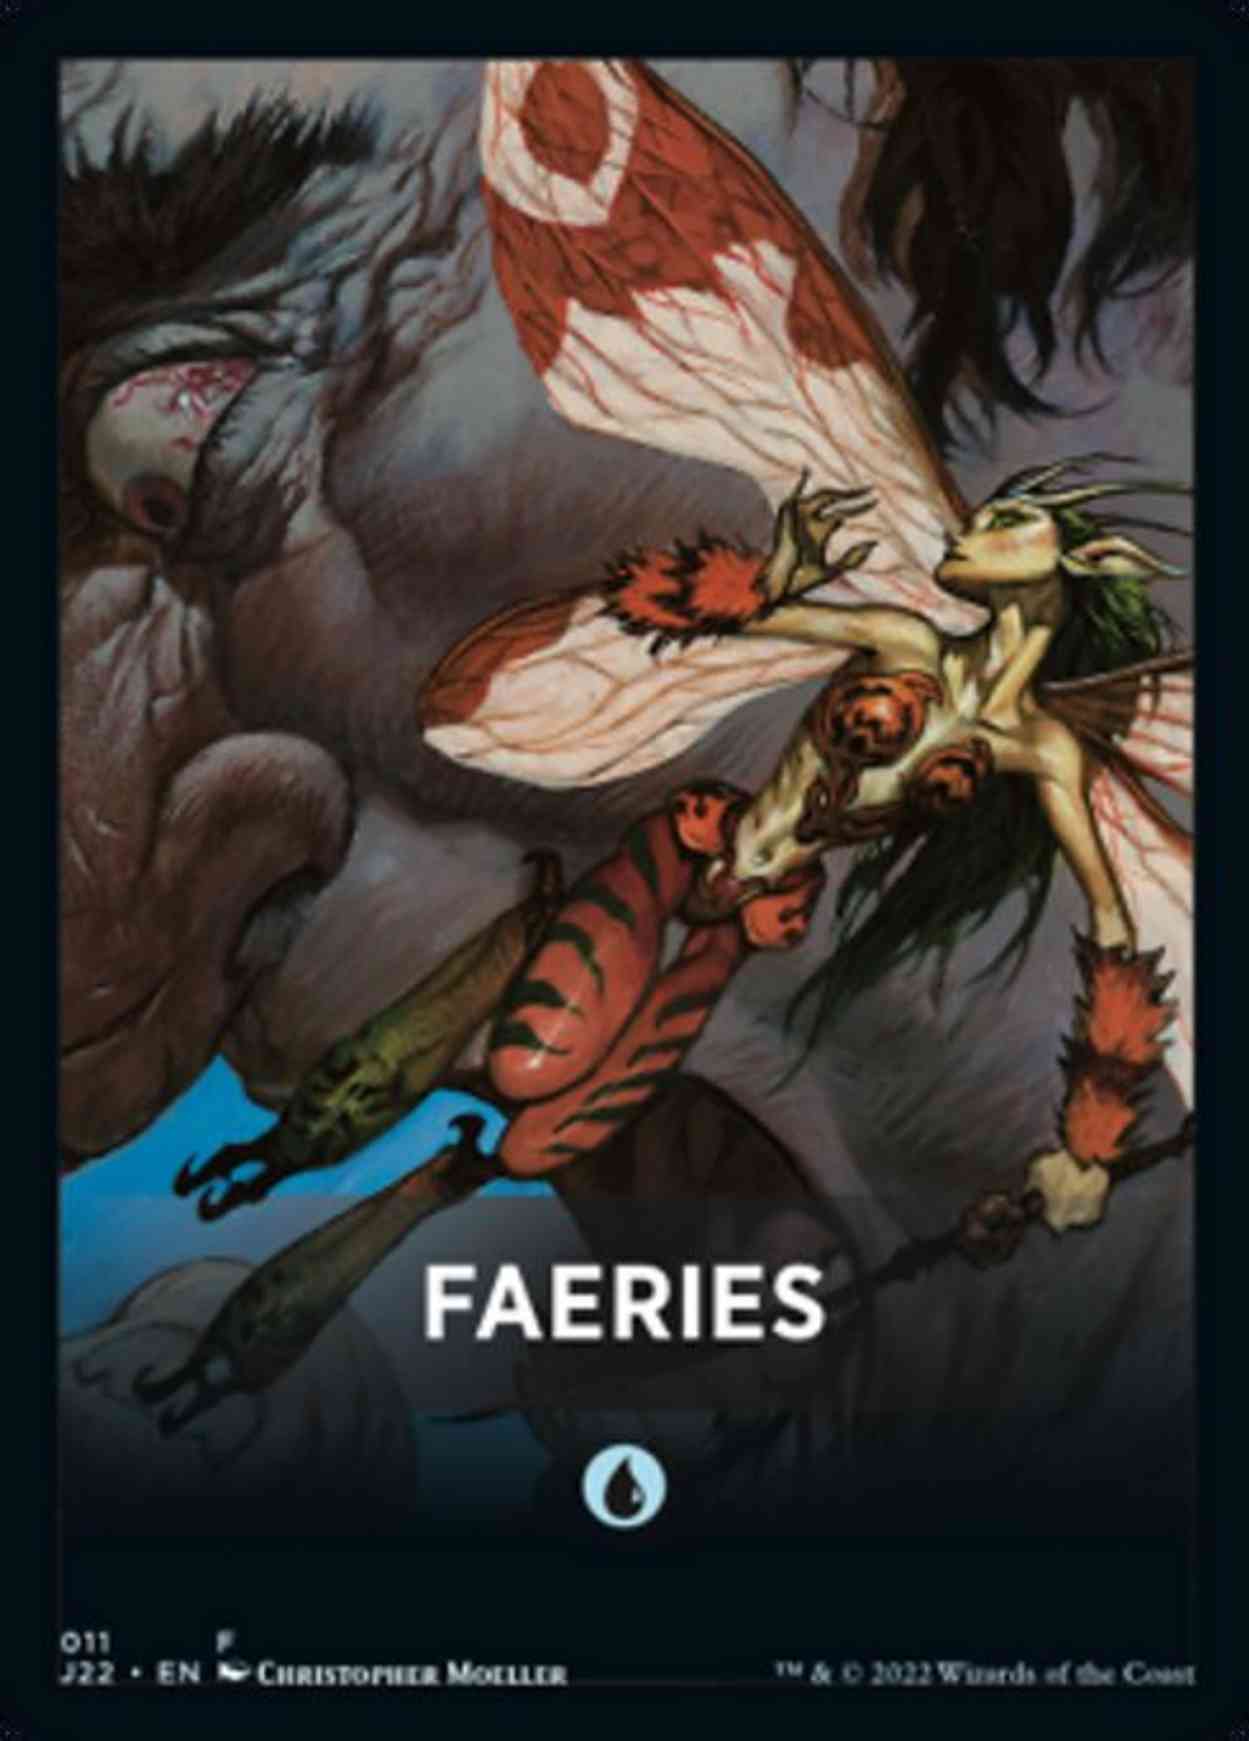 Faeries Theme Card magic card front